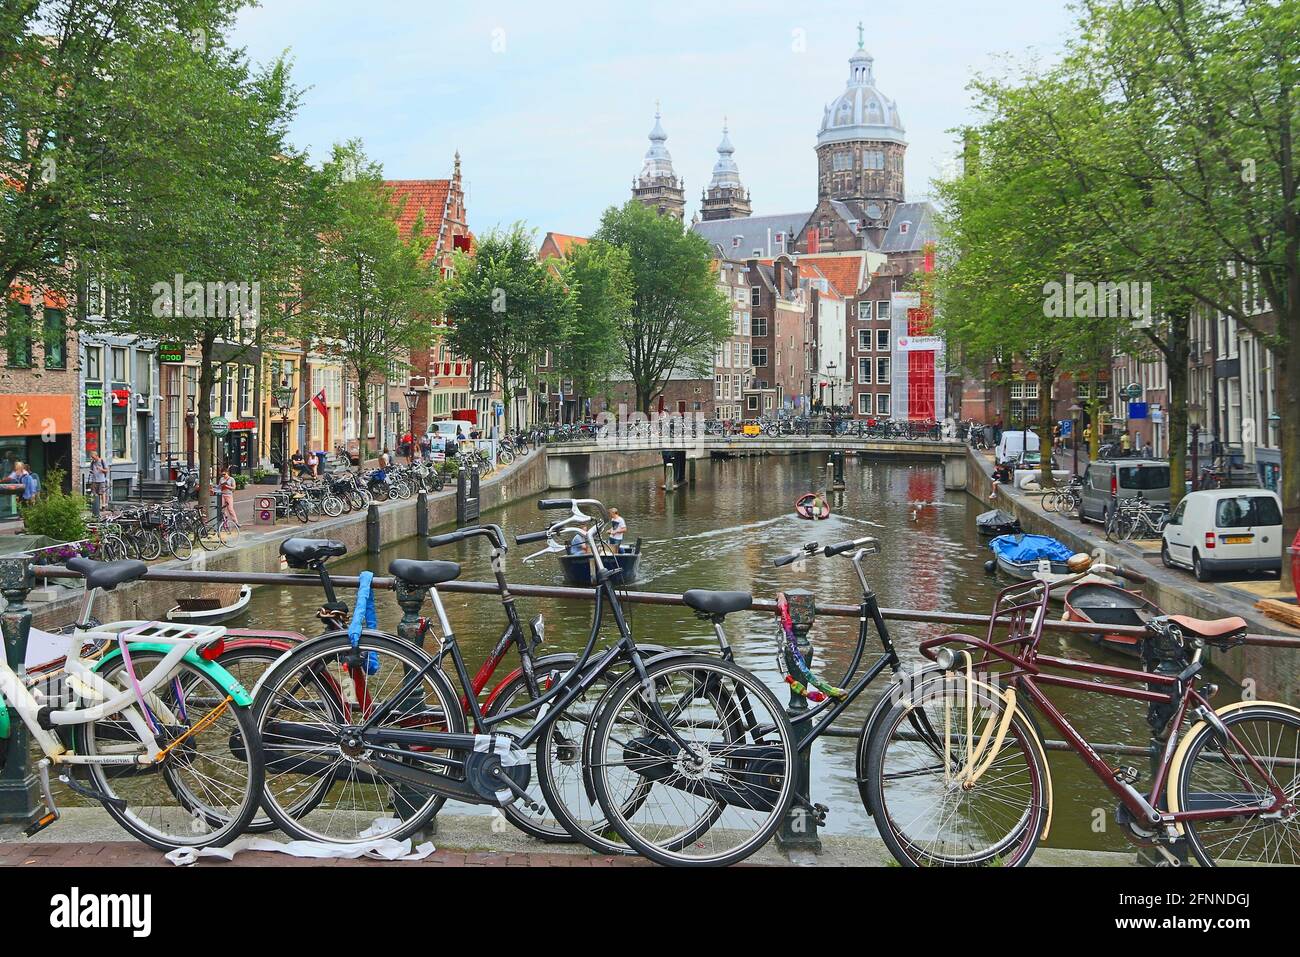 AMSTERDAM, Paesi Bassi - 8 Luglio 2017: la gente visita de Wallen quartiere a luci rosse di Amsterdam, Paesi Bassi. Amsterdam è notevole per la sua atmosfera rilassata leggi Foto Stock